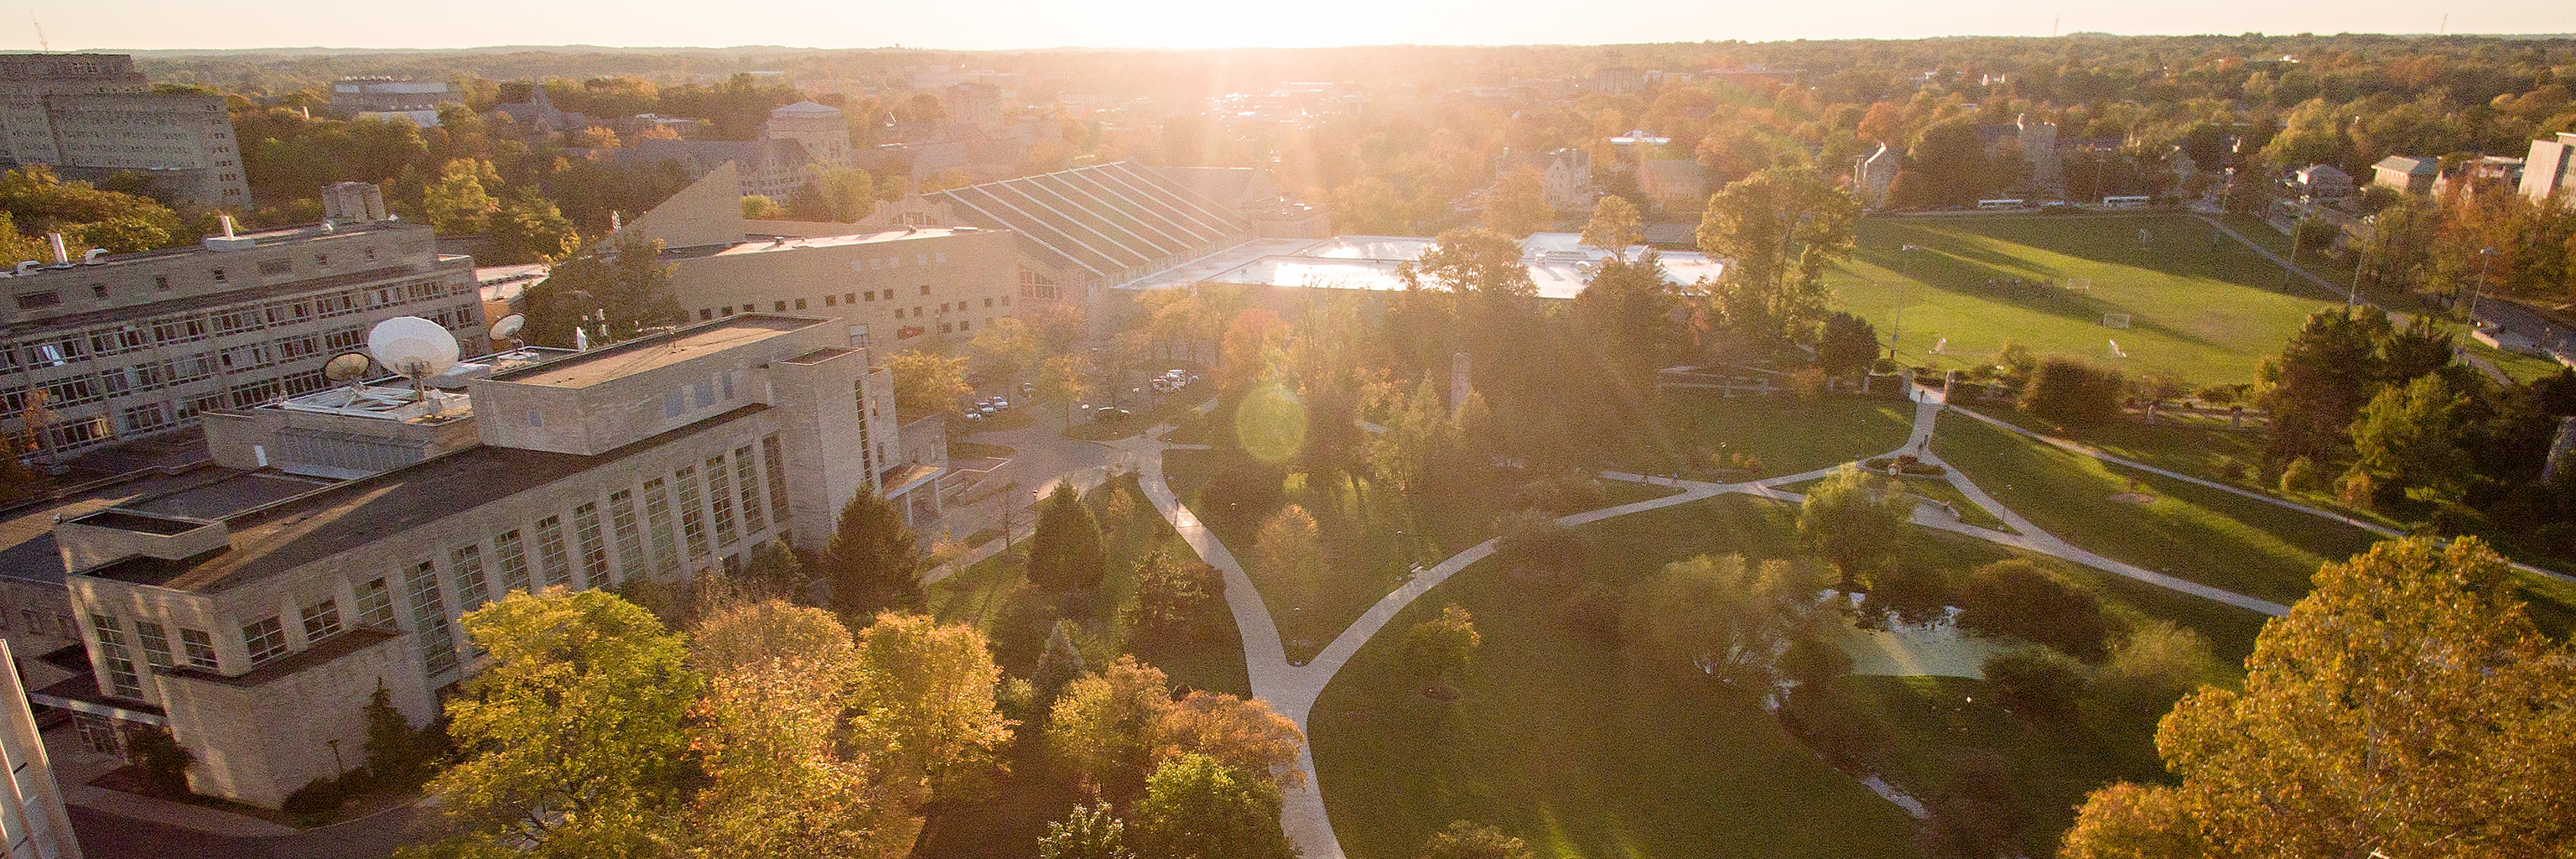 Crossing pathways through the IU Bloomington campus.